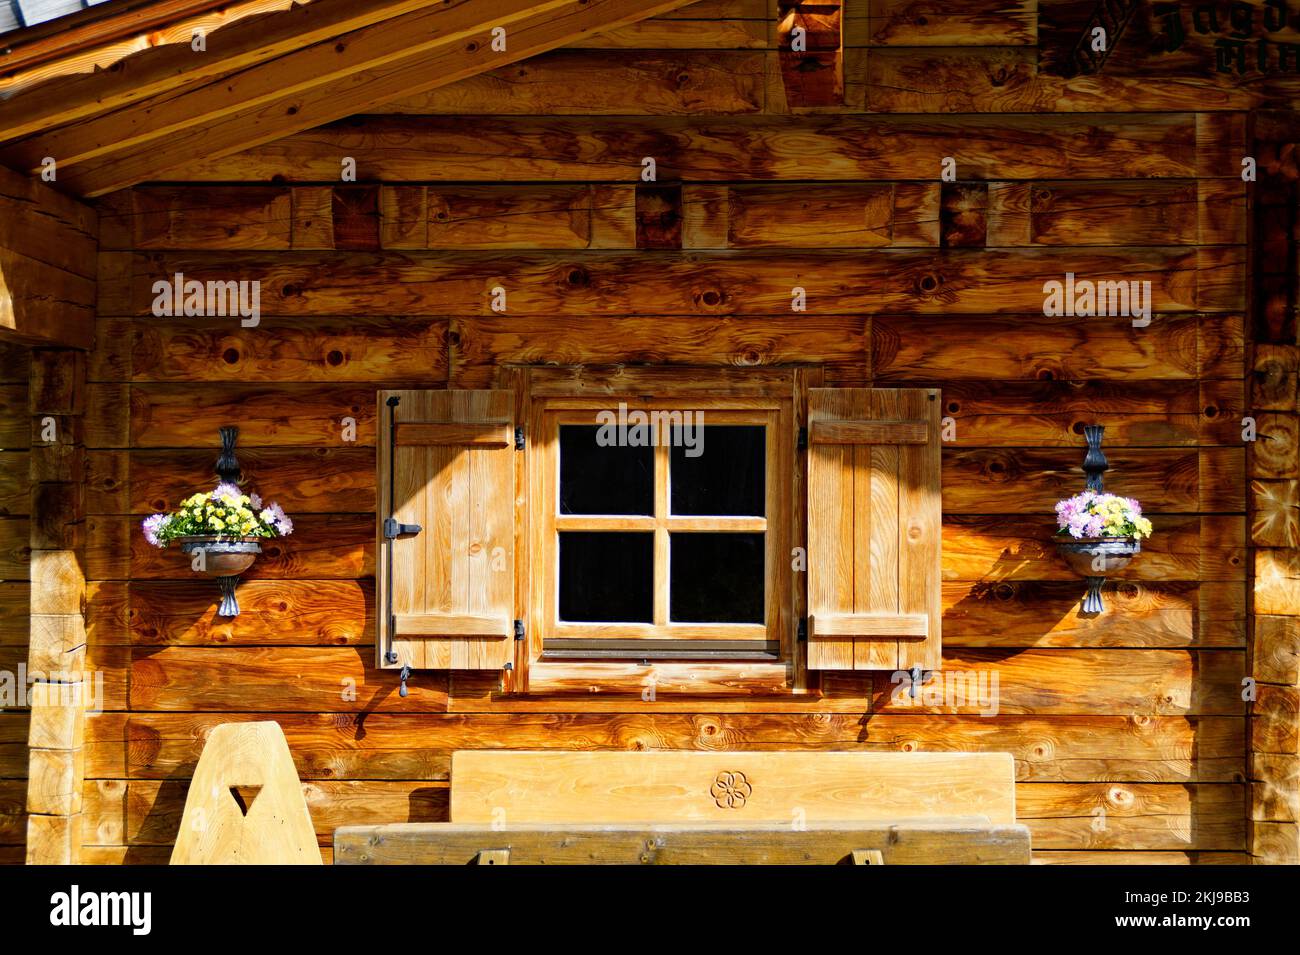 Rustica cabina alpina in legno a piedi del monte Dachstein nel villaggio alpino Neustatt Alm o Neustattalm nelle Alpi austriache a Schladming-Dachstein Foto Stock